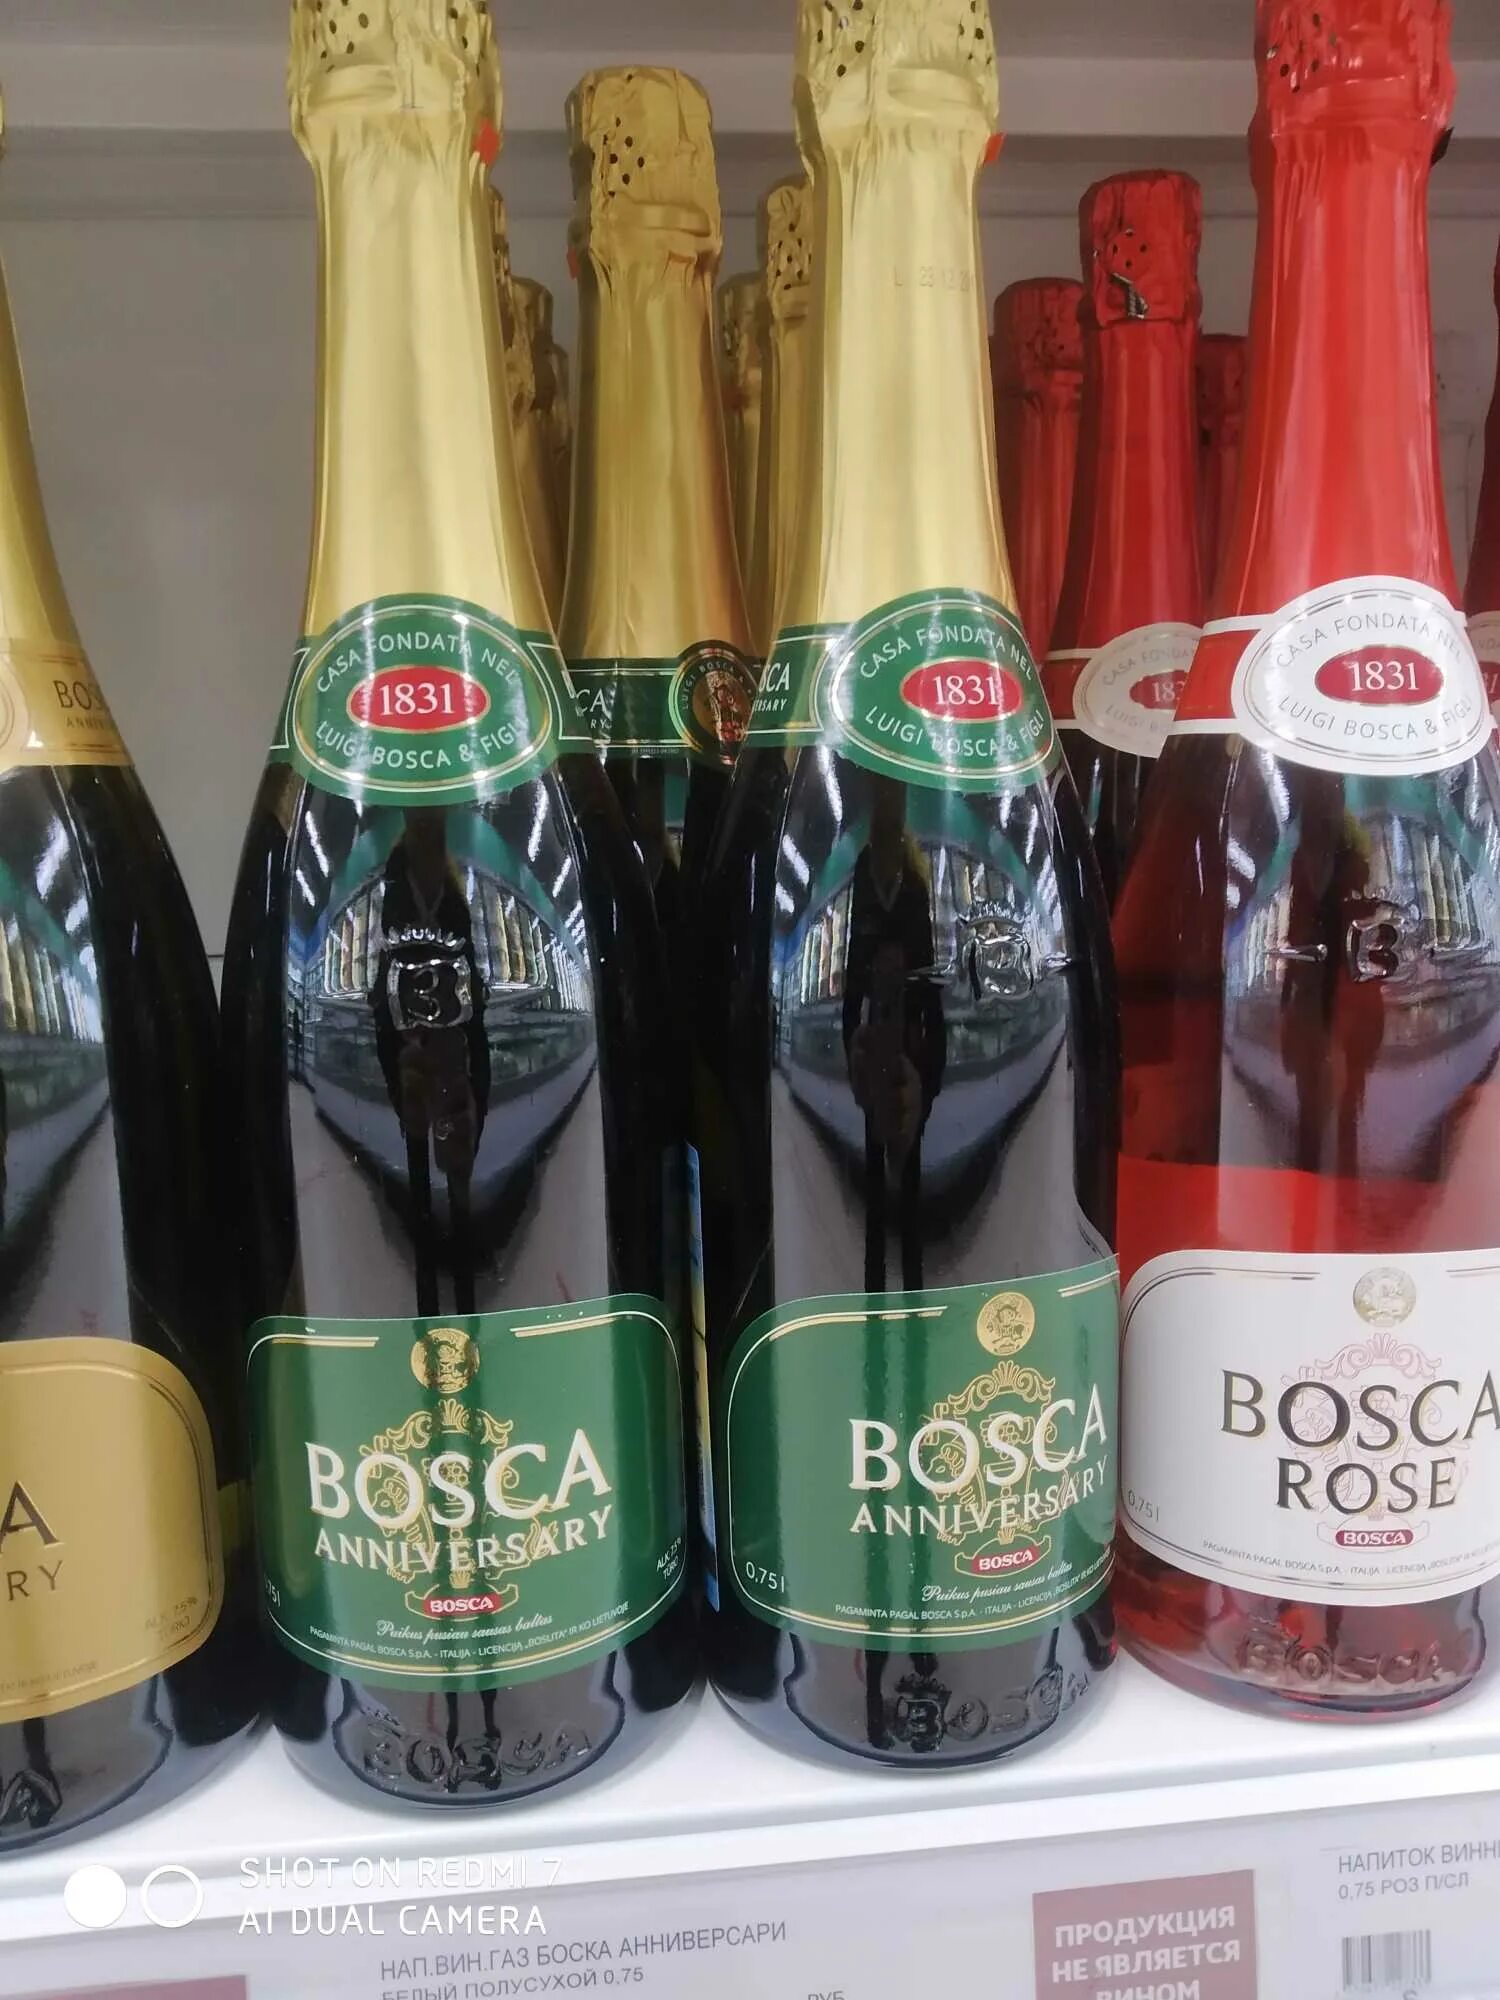 Красное белое боско. Винный напиток Bosca Боско. Боско шампанское Анниверсари. Напиток винный Bosca Анниверсари. Винный напиток Bosca Rose 0.75.